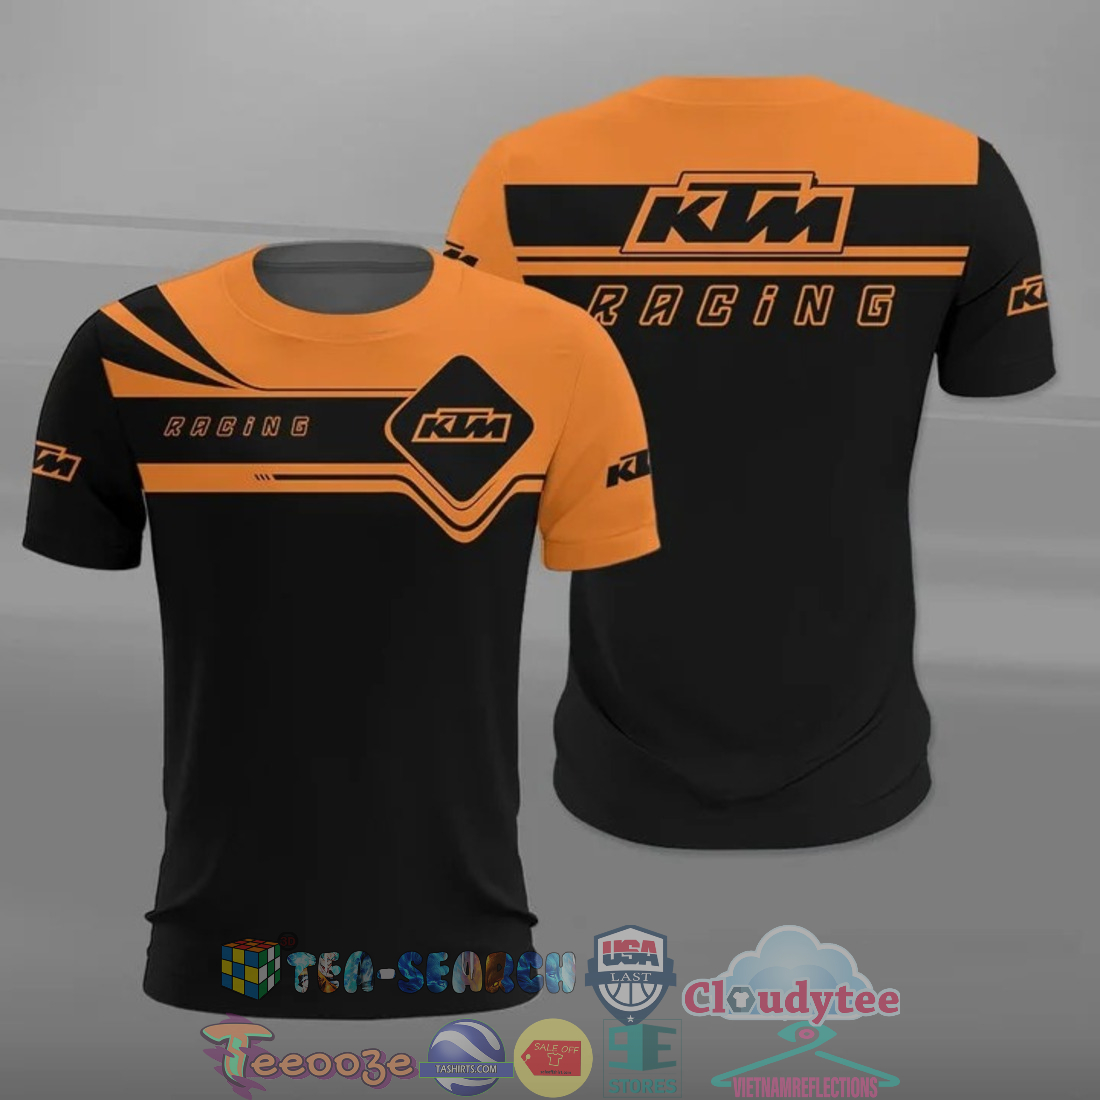 KtQctQ67-TH110522-19xxxKTM-Racing-all-over-printed-t-shirt-hoodie3.jpg